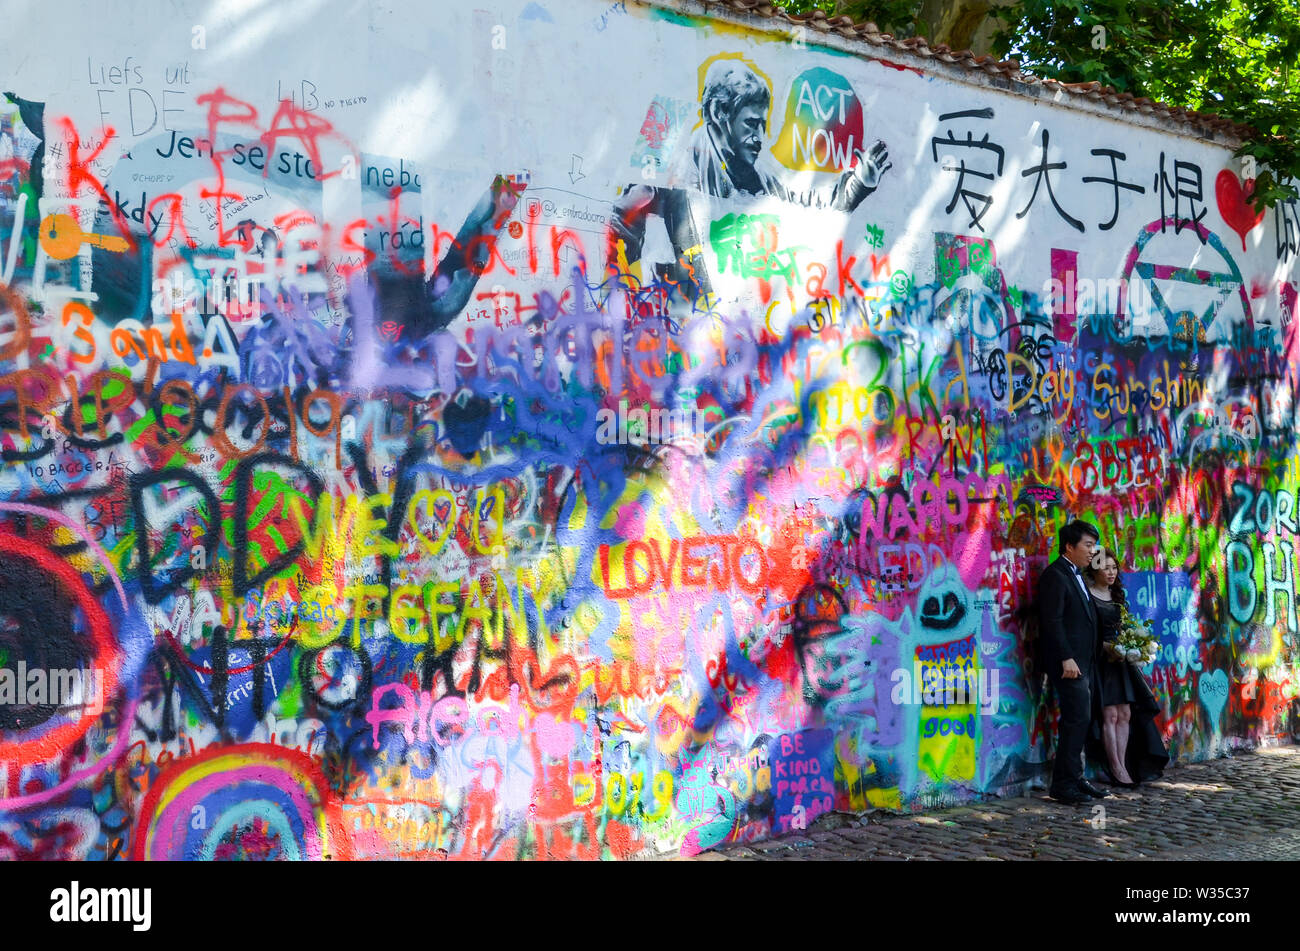 Prague, République tchèque - 27 juin 2019 : pendant la séance photo de mariage en face du célèbre John Lennon Wall en capitale tchèque. Mur de graffiti inspiré par le célèbre artiste. Lieu touristique populaire. Banque D'Images